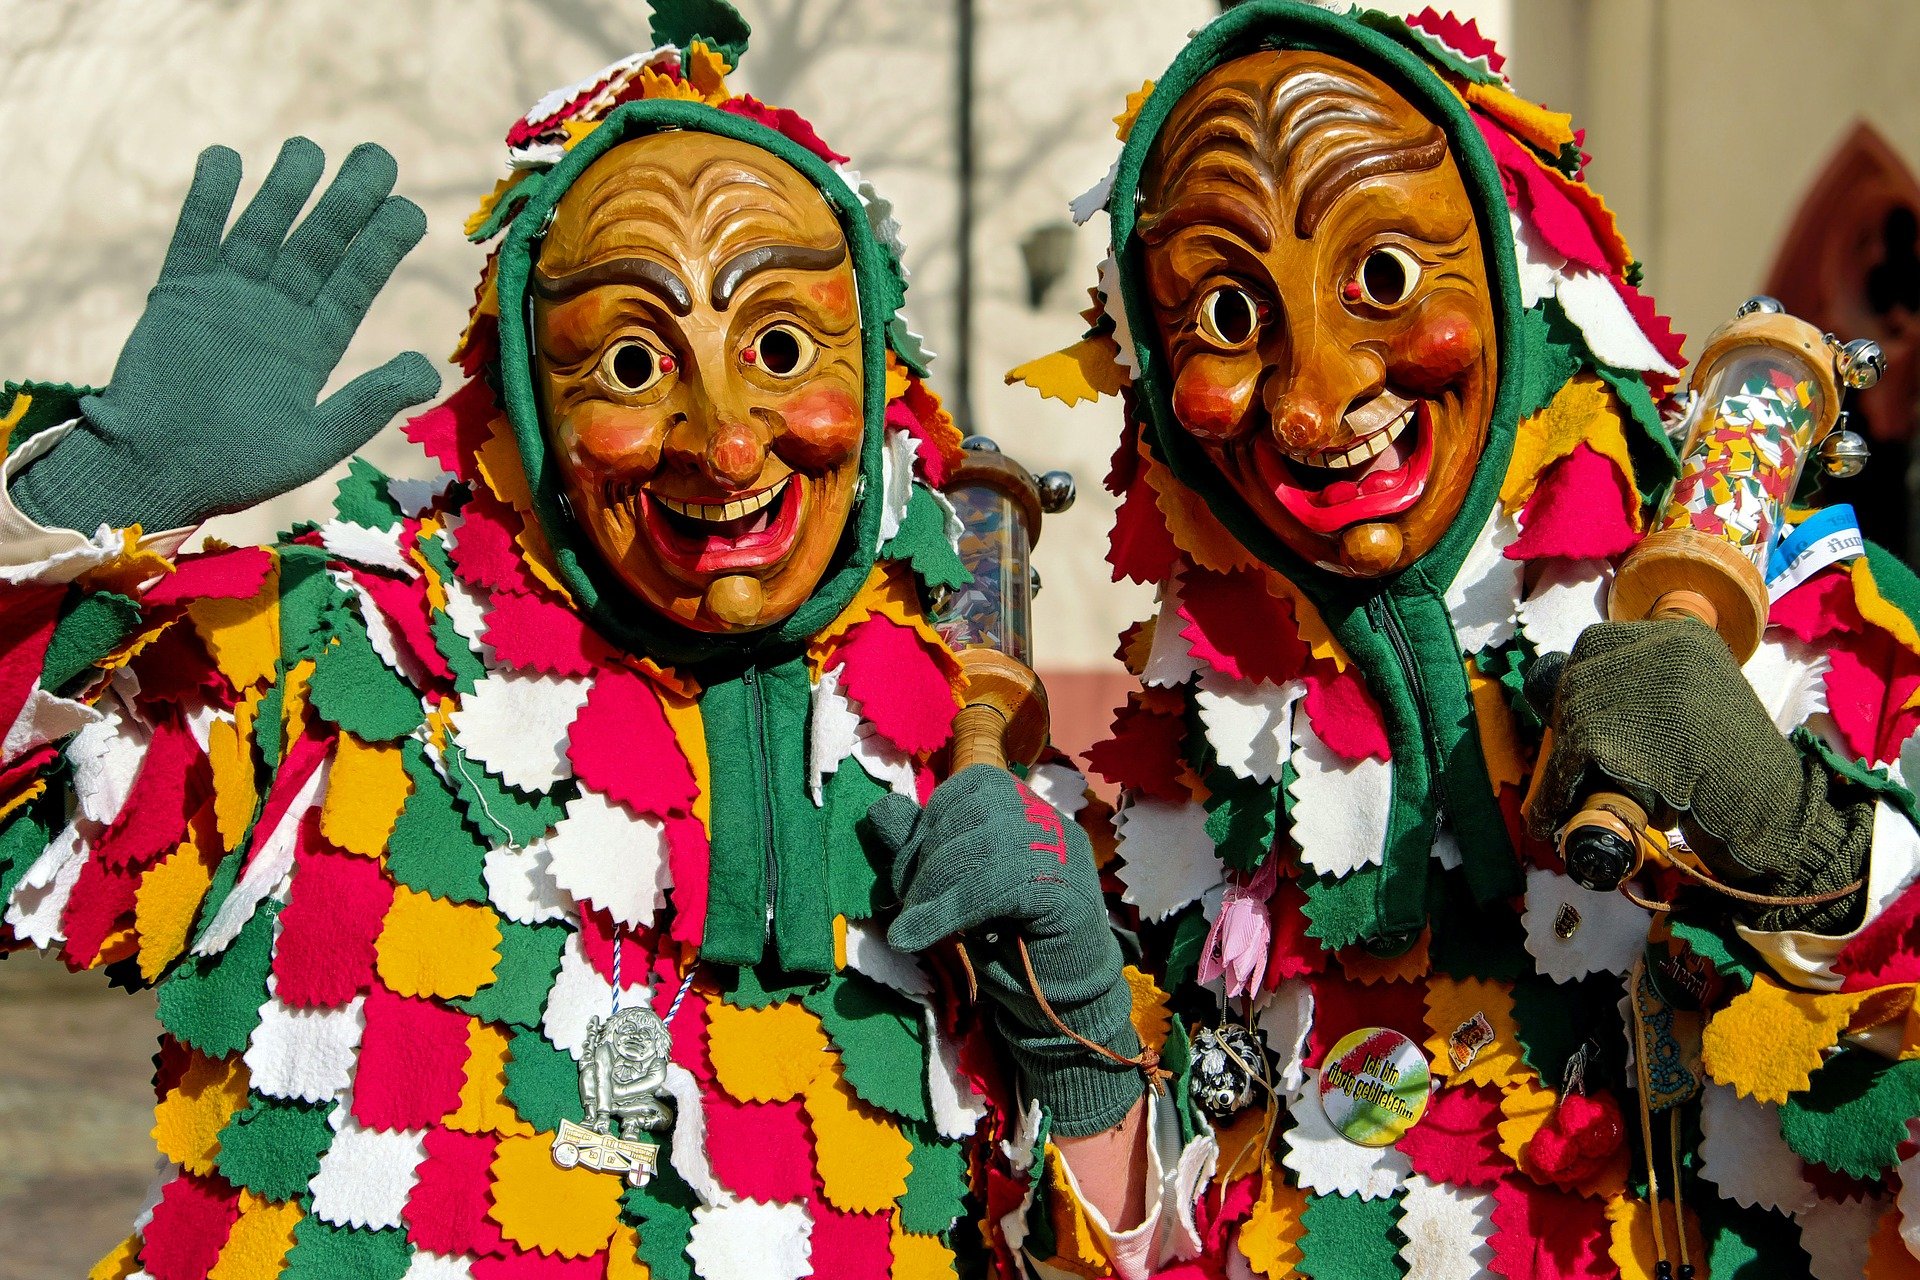 El ritual de disfrazarse es propio del Carnaval.